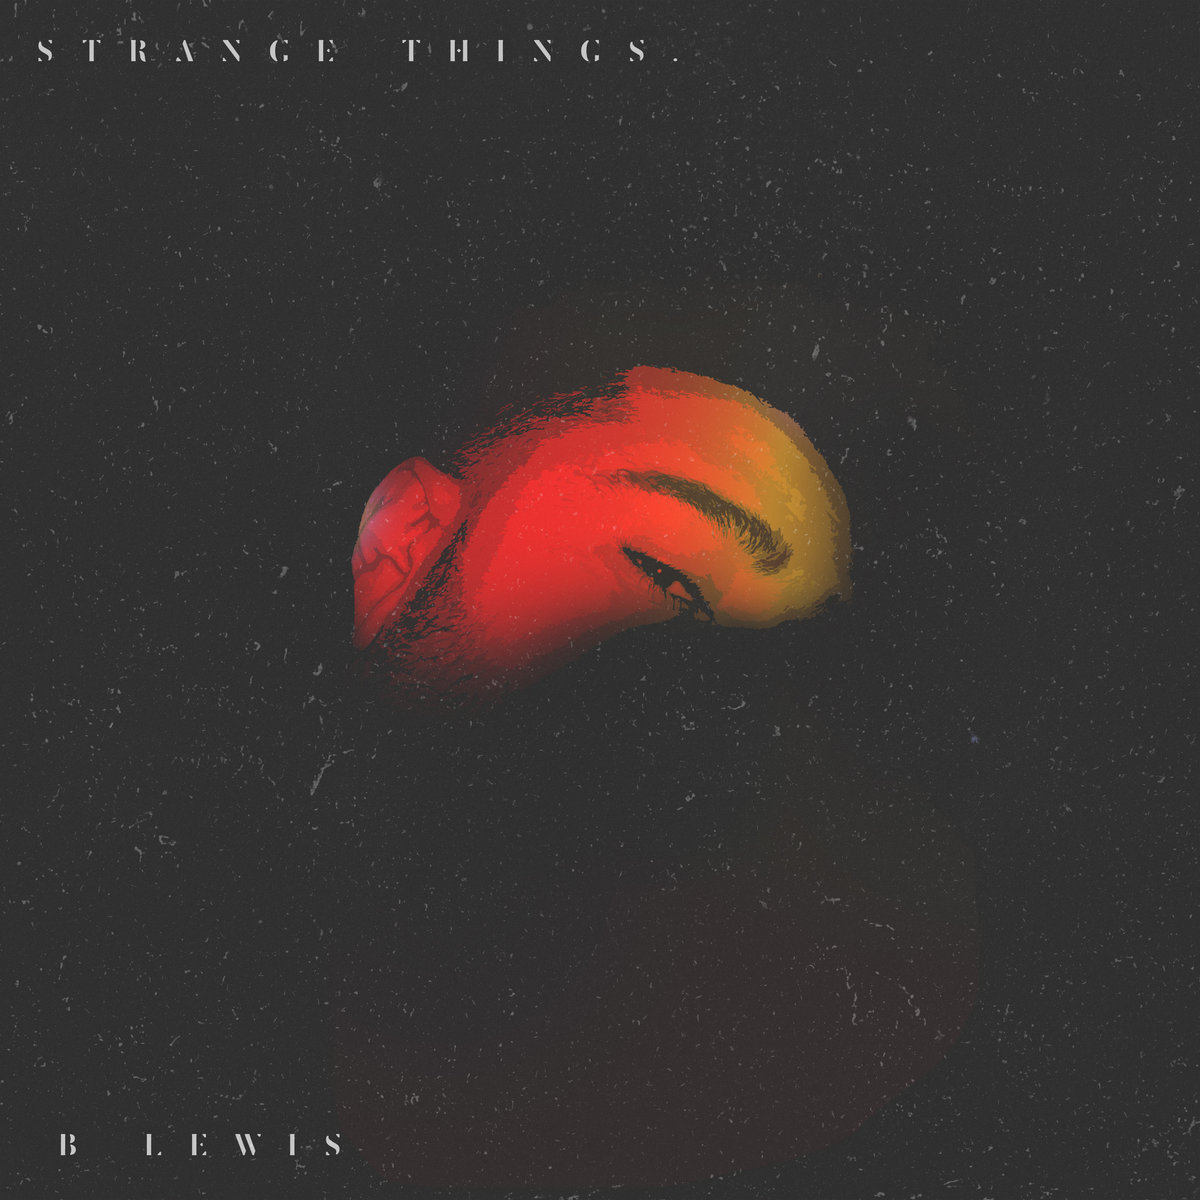 B. LEWIS / STRANGE THINGS 7"